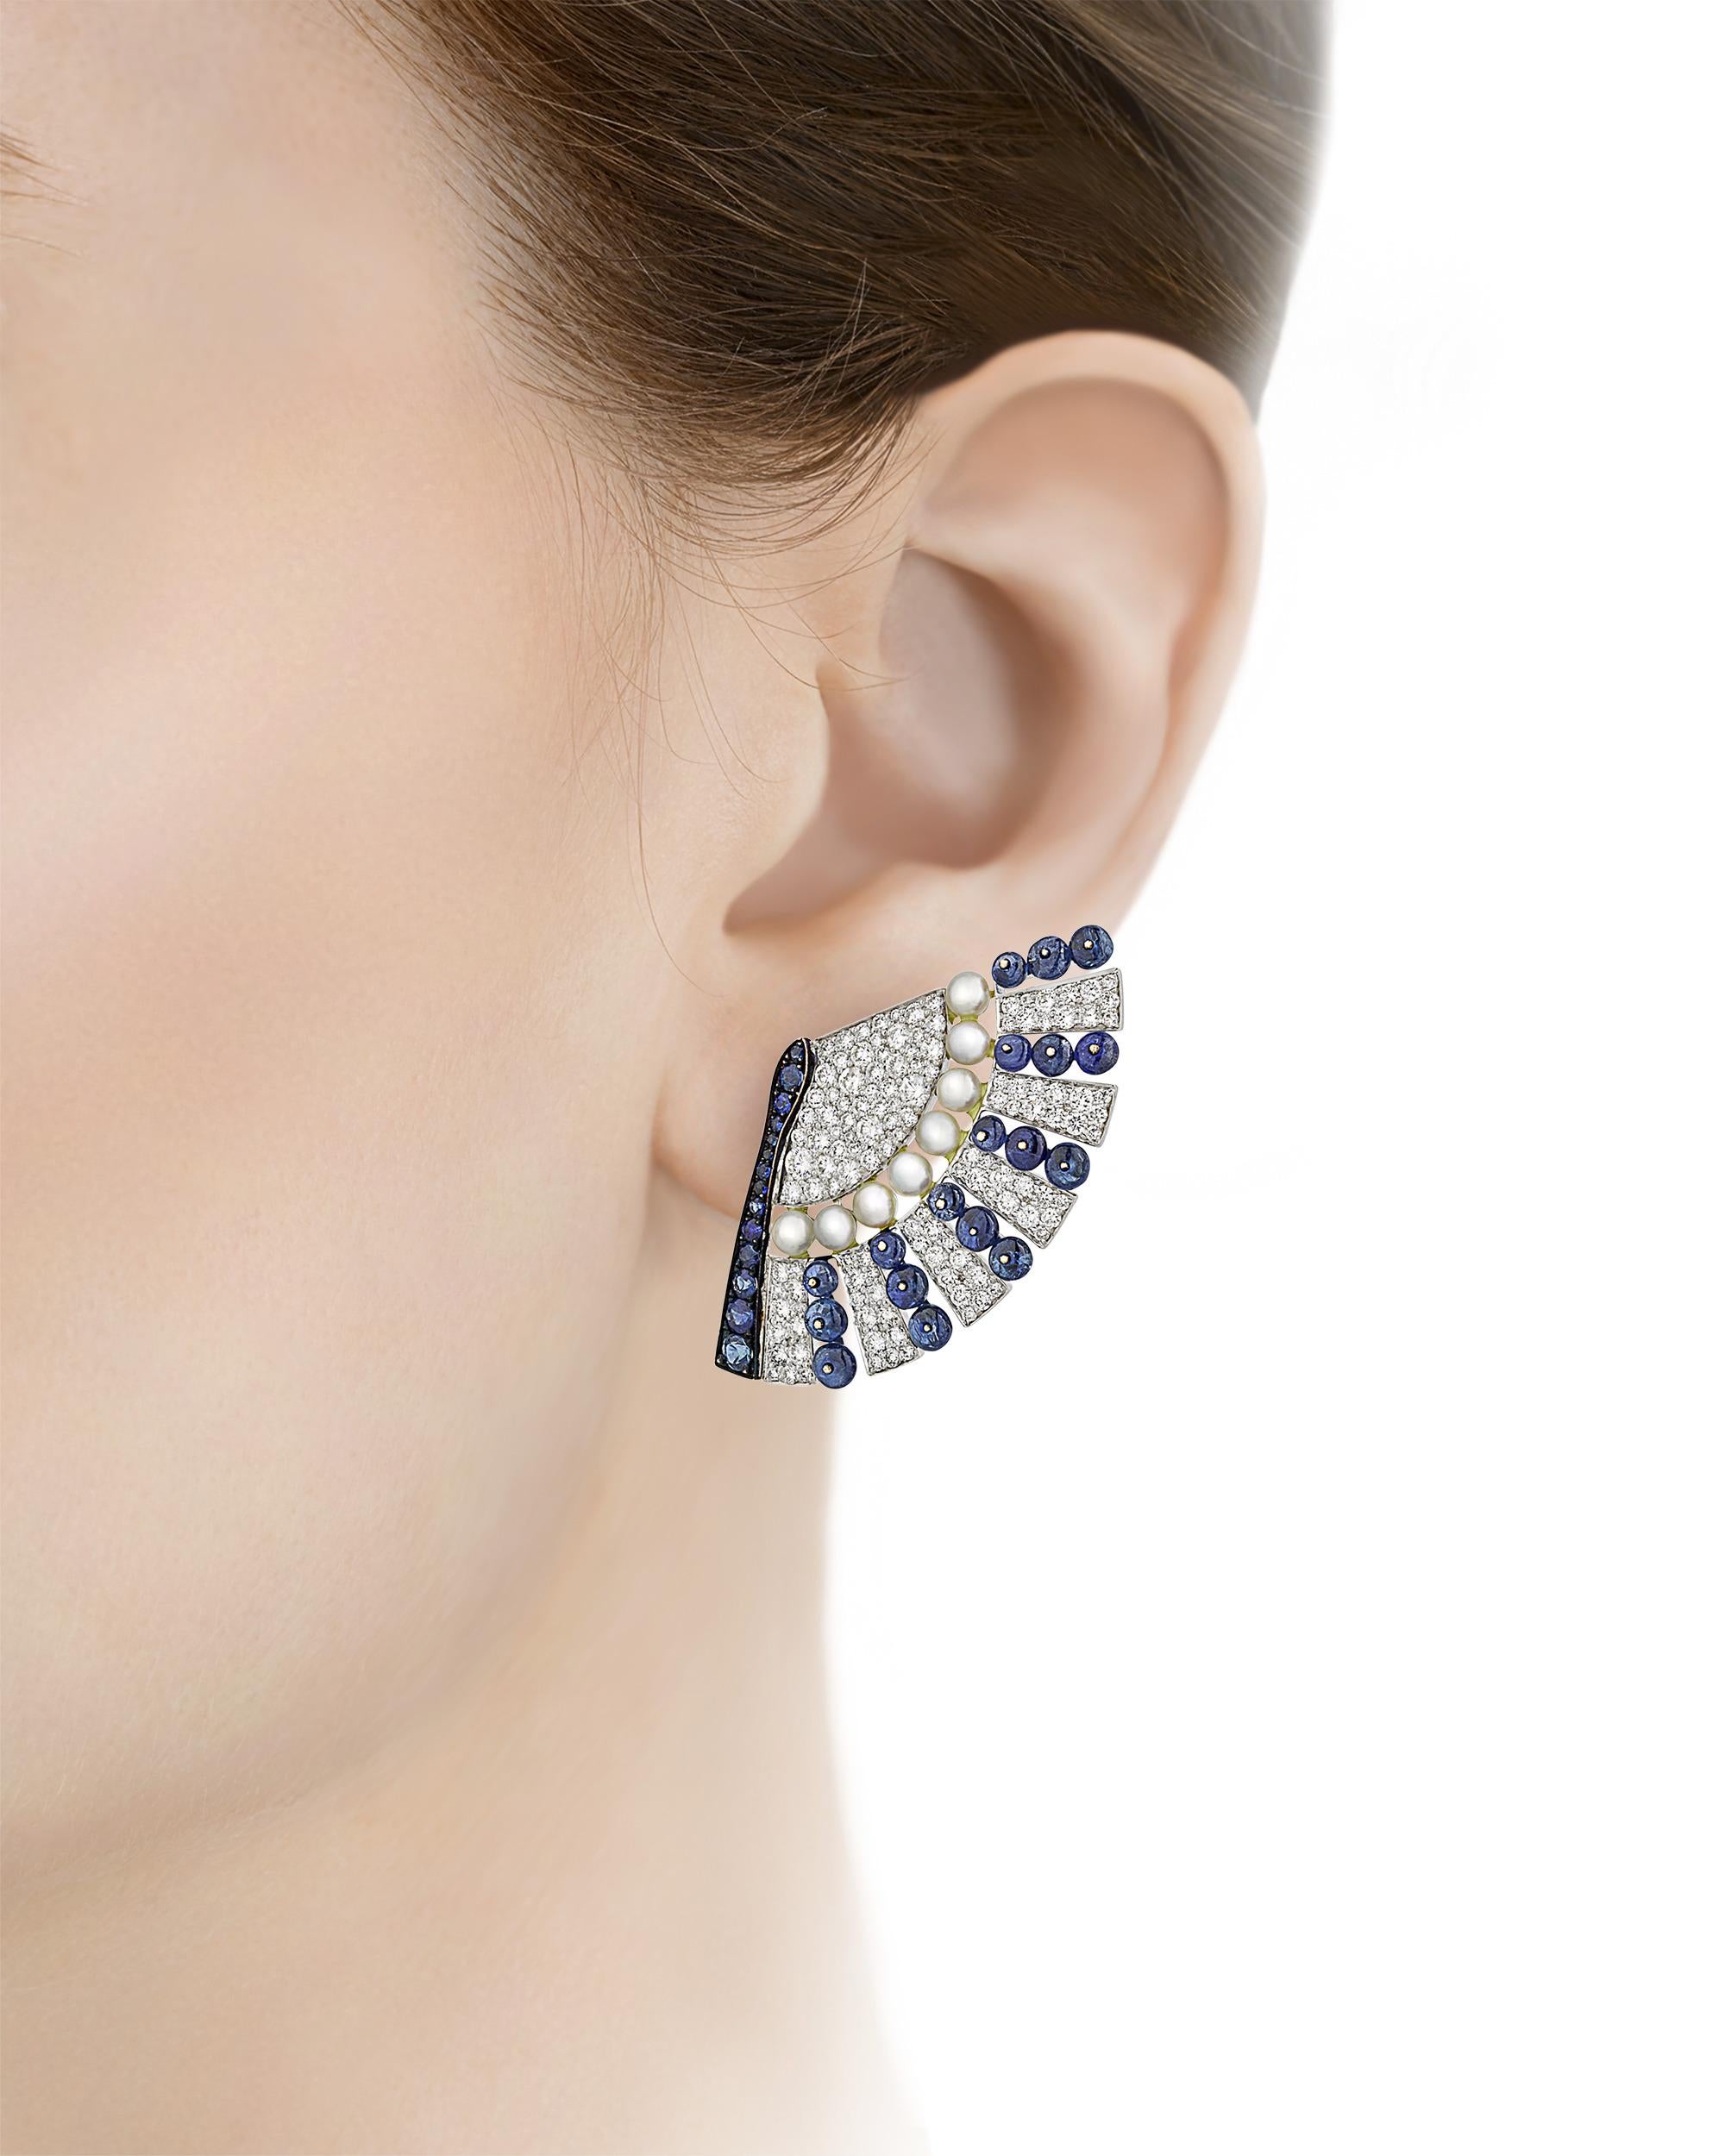 De riches saphirs bleus, des diamants étincelants et des perles de rocaille sont réunis dans ces boucles d'oreilles conçues pour ressembler à un élégant éventail de femme. Les saphirs totalisent 10,39 carats, et les diamants pèsent 3,81 carats.